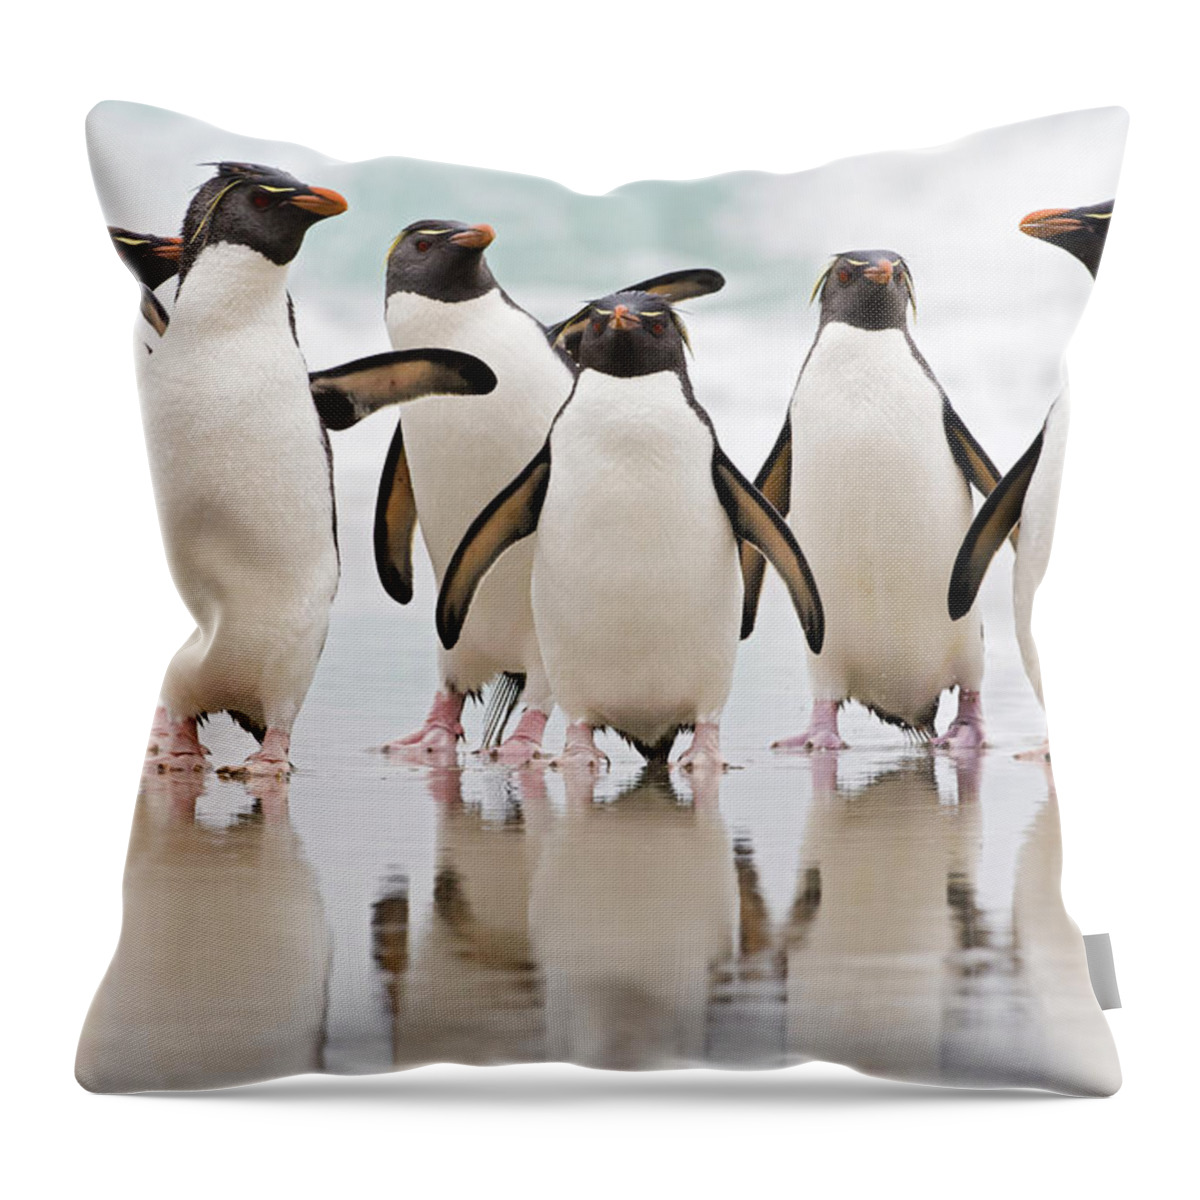 533777 Throw Pillow featuring the photograph Rockhopper Penguin Emerging by Heike Odermatt